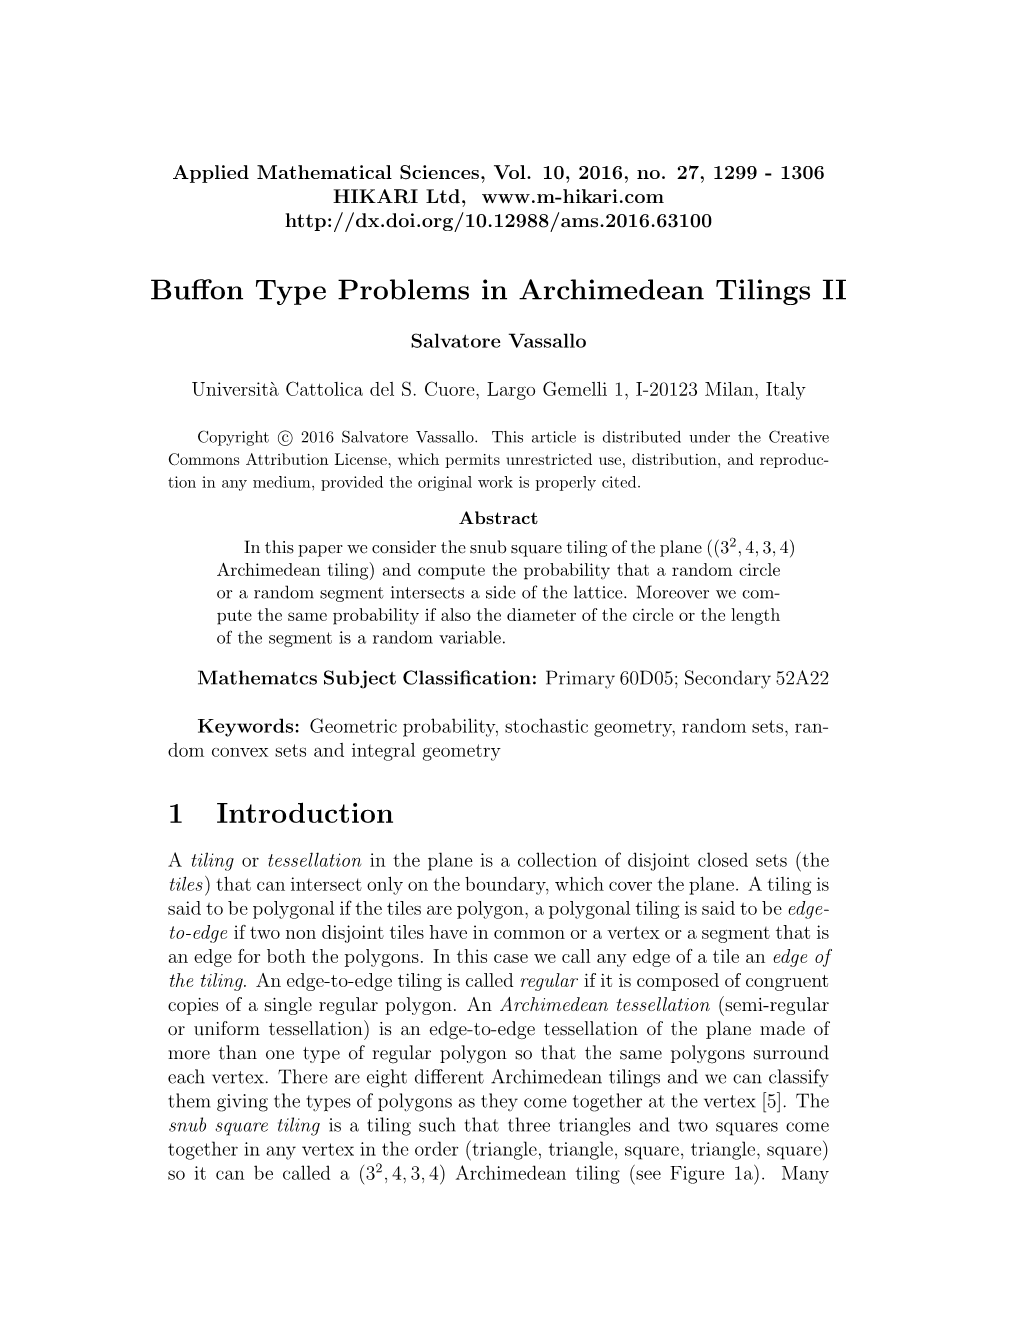 Buffon Type Problems in Archimedean Tilings II